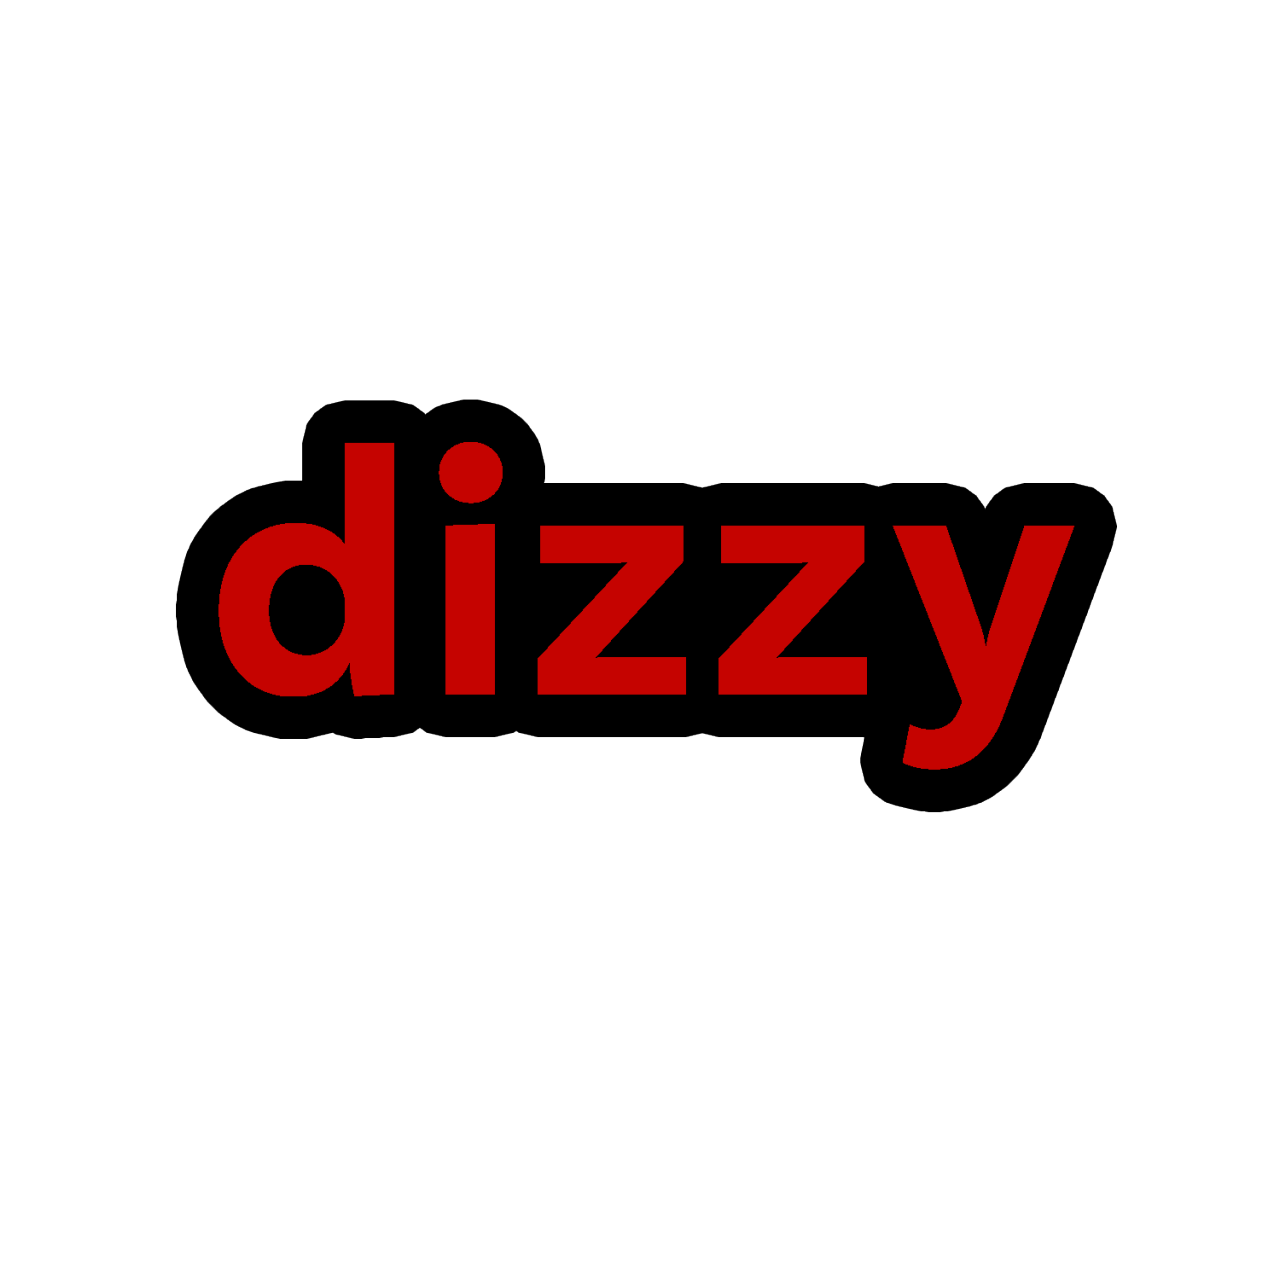 < - - !! - - >
​
DIZZY MOJIS ! 
- - > dizzy
- - > dizzy today
- - > dni, am dizzy
- - > dizzy rn
​
< - - !! - - > #dizzy#dizzy today #dni am dizzy #dizzy rn #!! emoji #emoji#emojis#custom emojis#mojis#custom emoji#discord emoji#discord emote#custom emote#emoji blog#mad#mad pride #mad pride emoji  #mad pride emote  #custom discord emoji  #custom discord emote